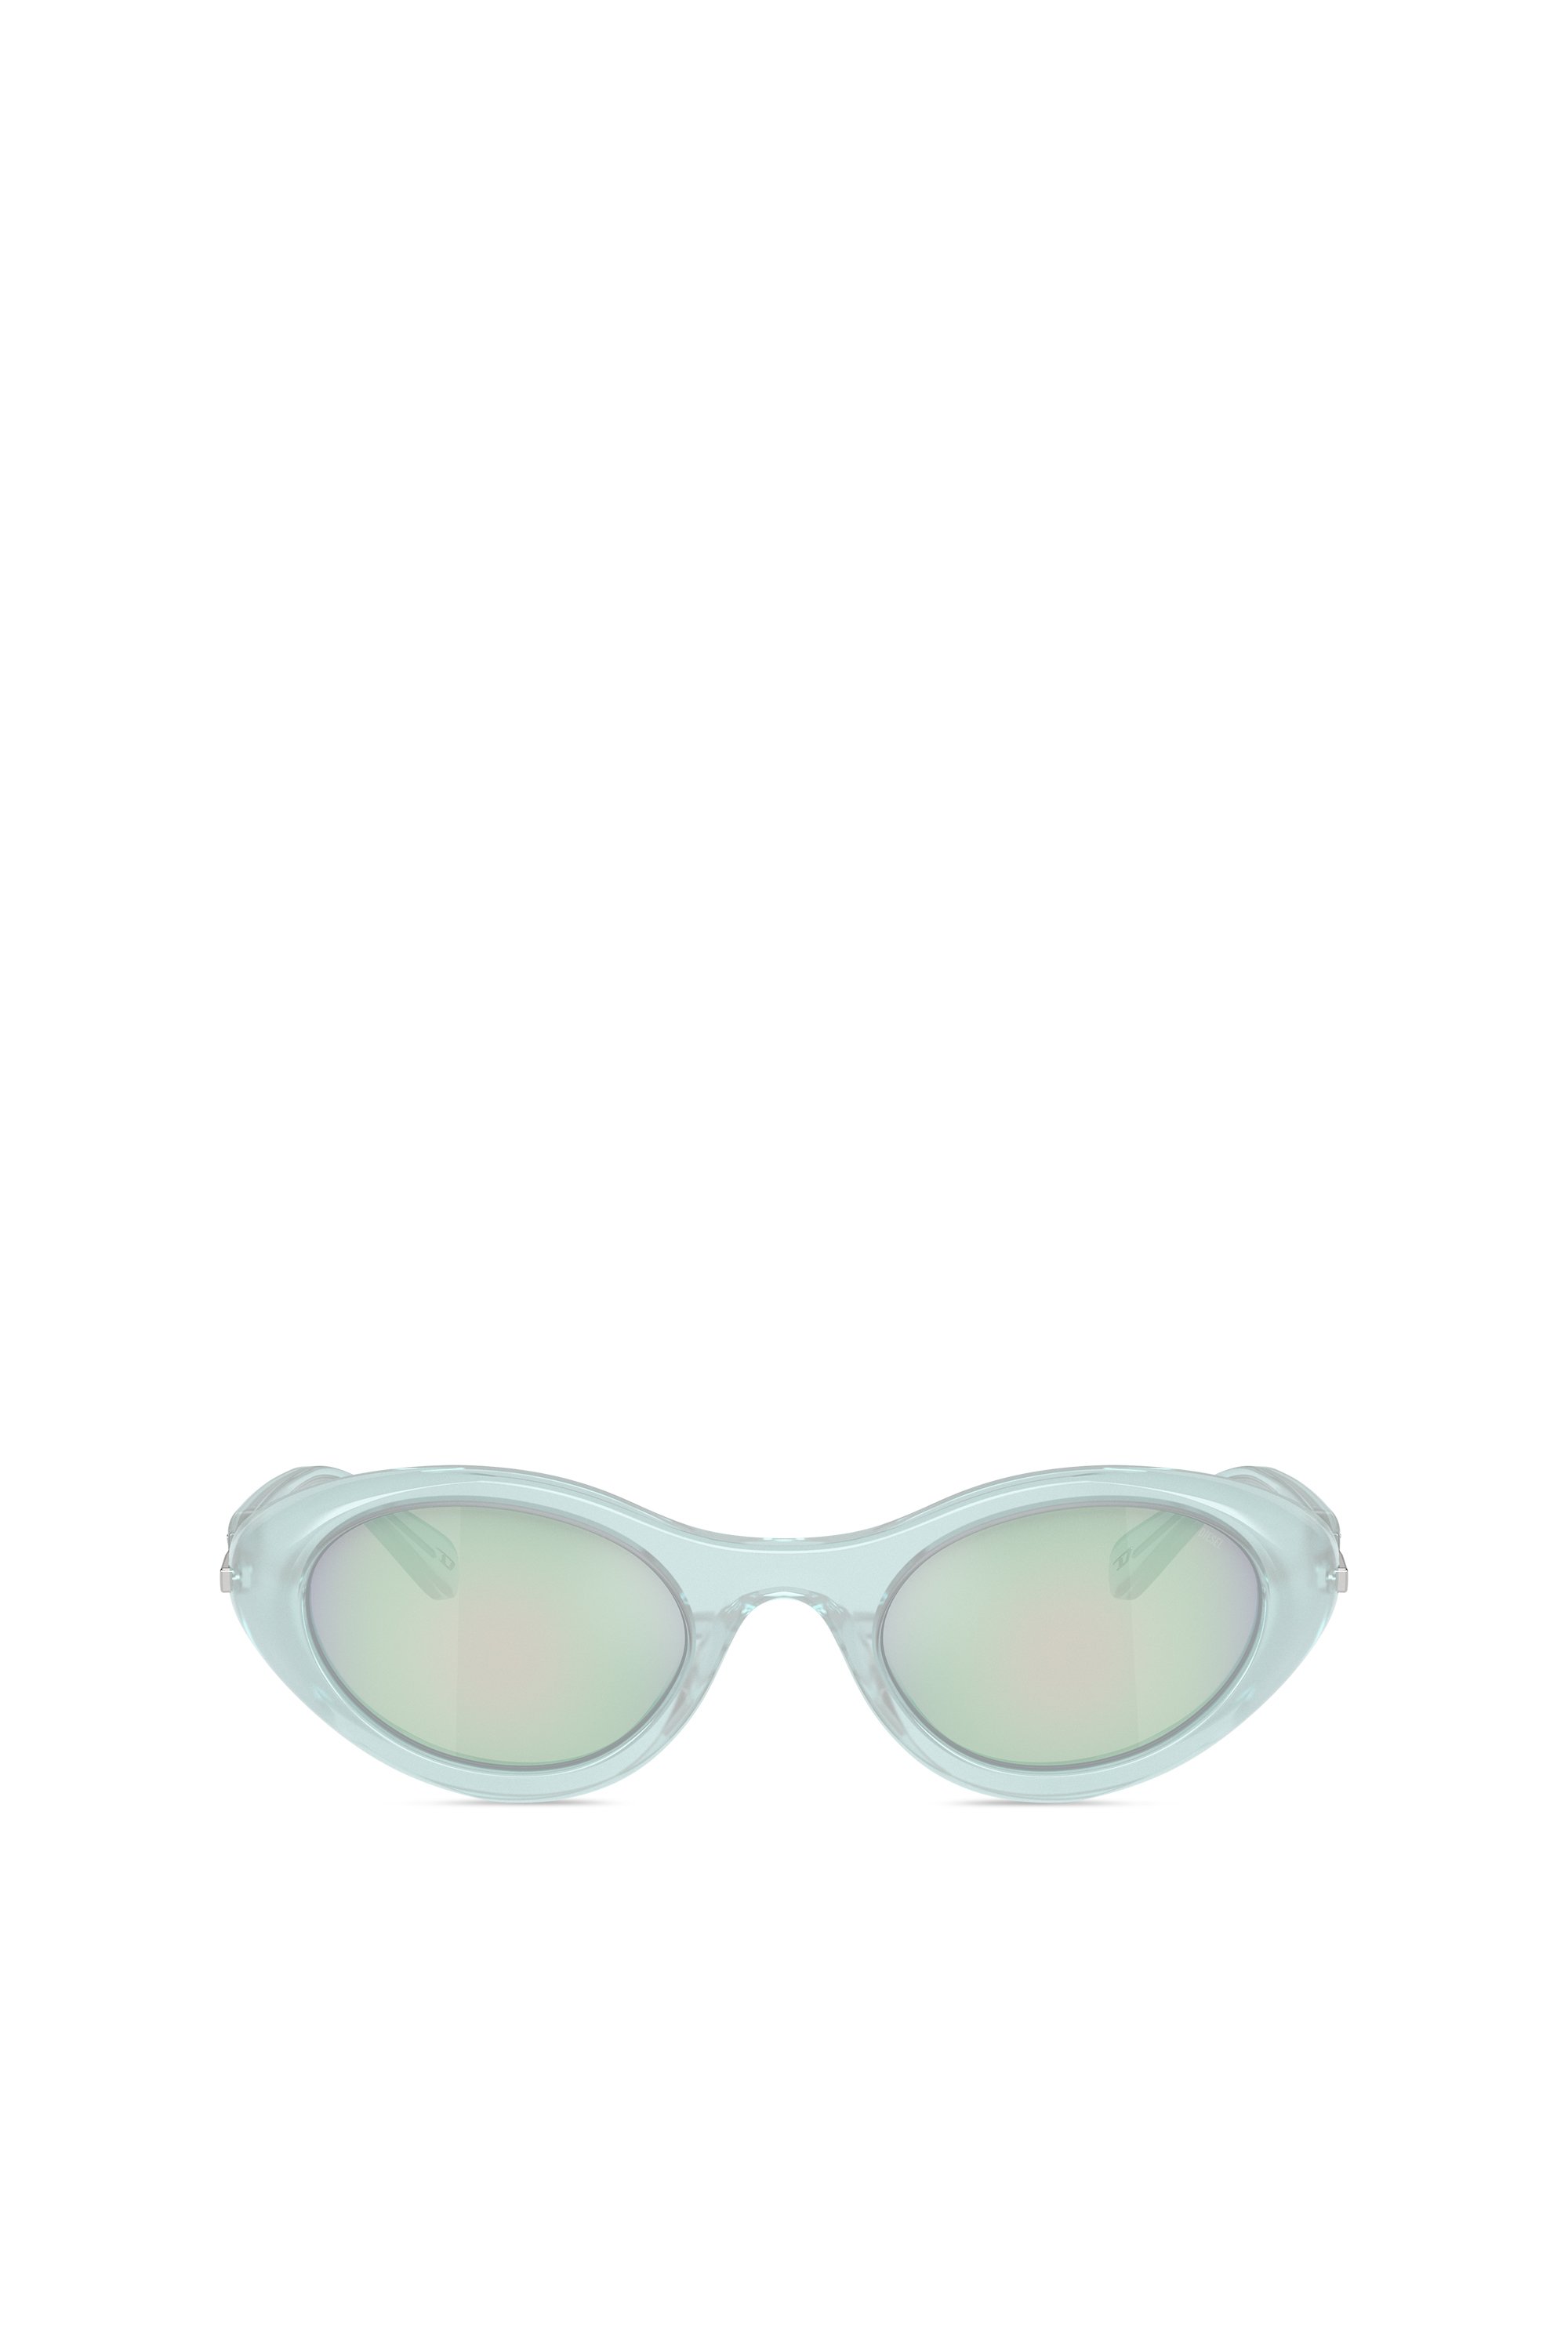 Diesel - Gafas de sol envolventes - Gafas de sol - Unisex - Azul marino